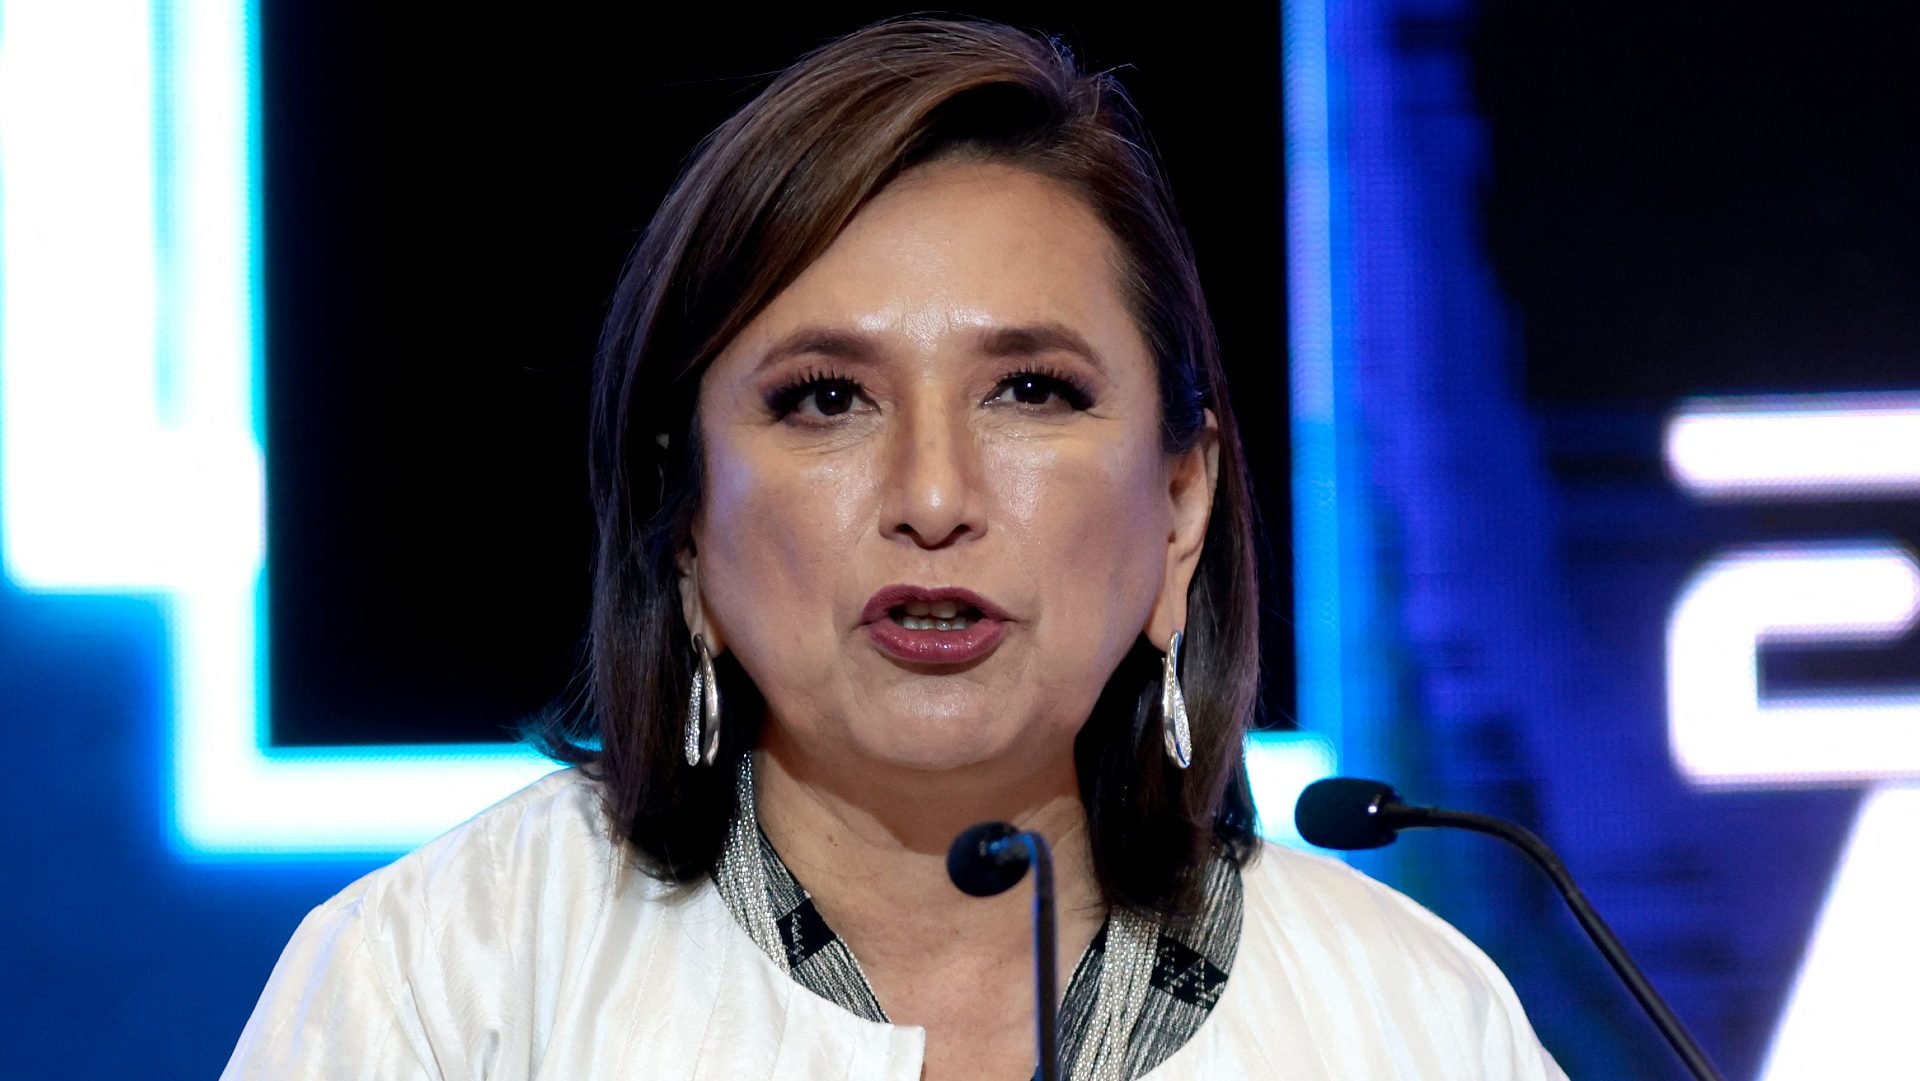 Las polémicas de Xóchitl Gálvez, candidata presidencial opositora
en México